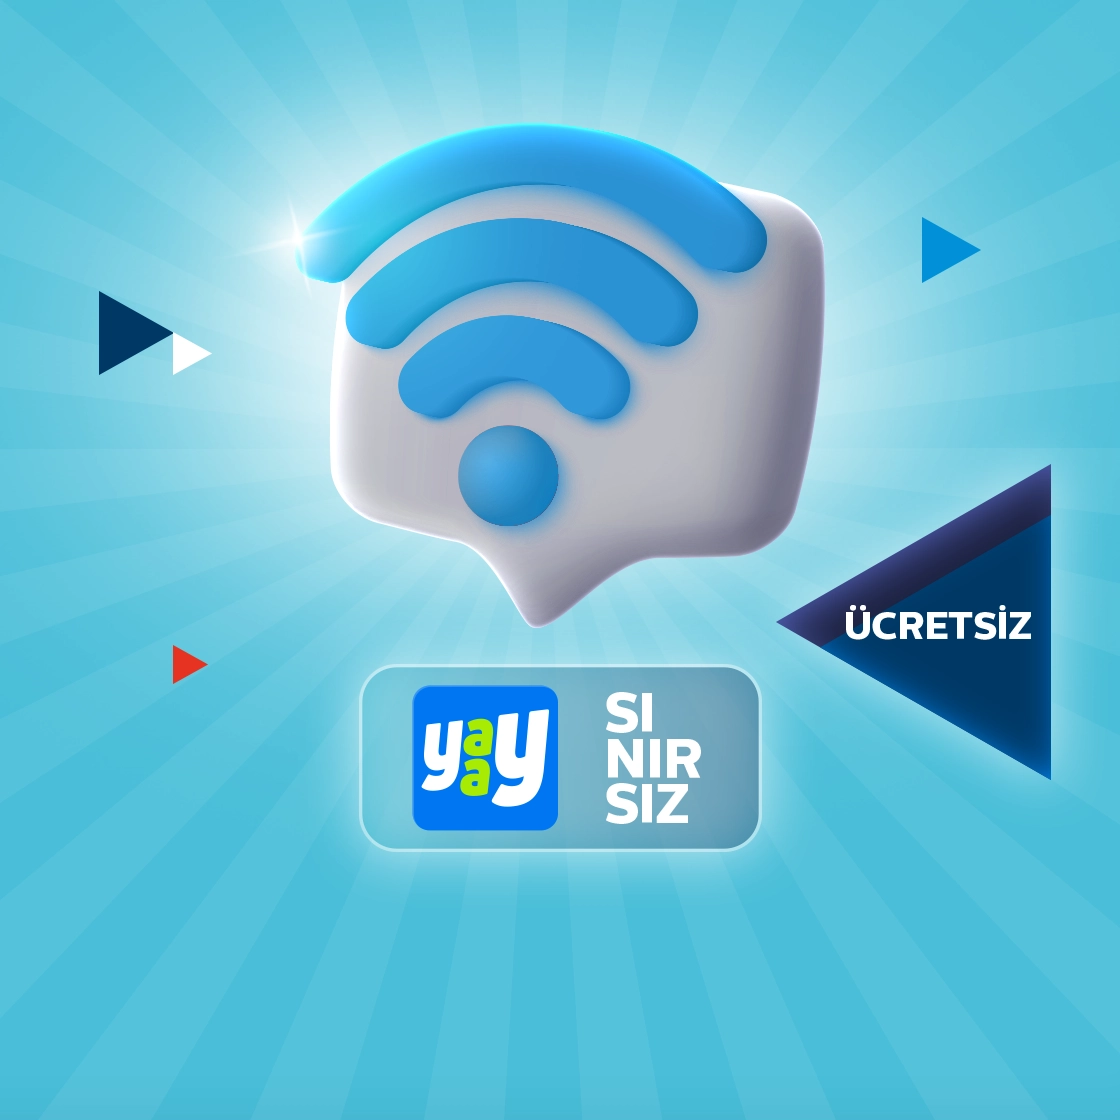 wifi sembolü altında yaay sembolü ücretsiz ve sınırsız yazısı